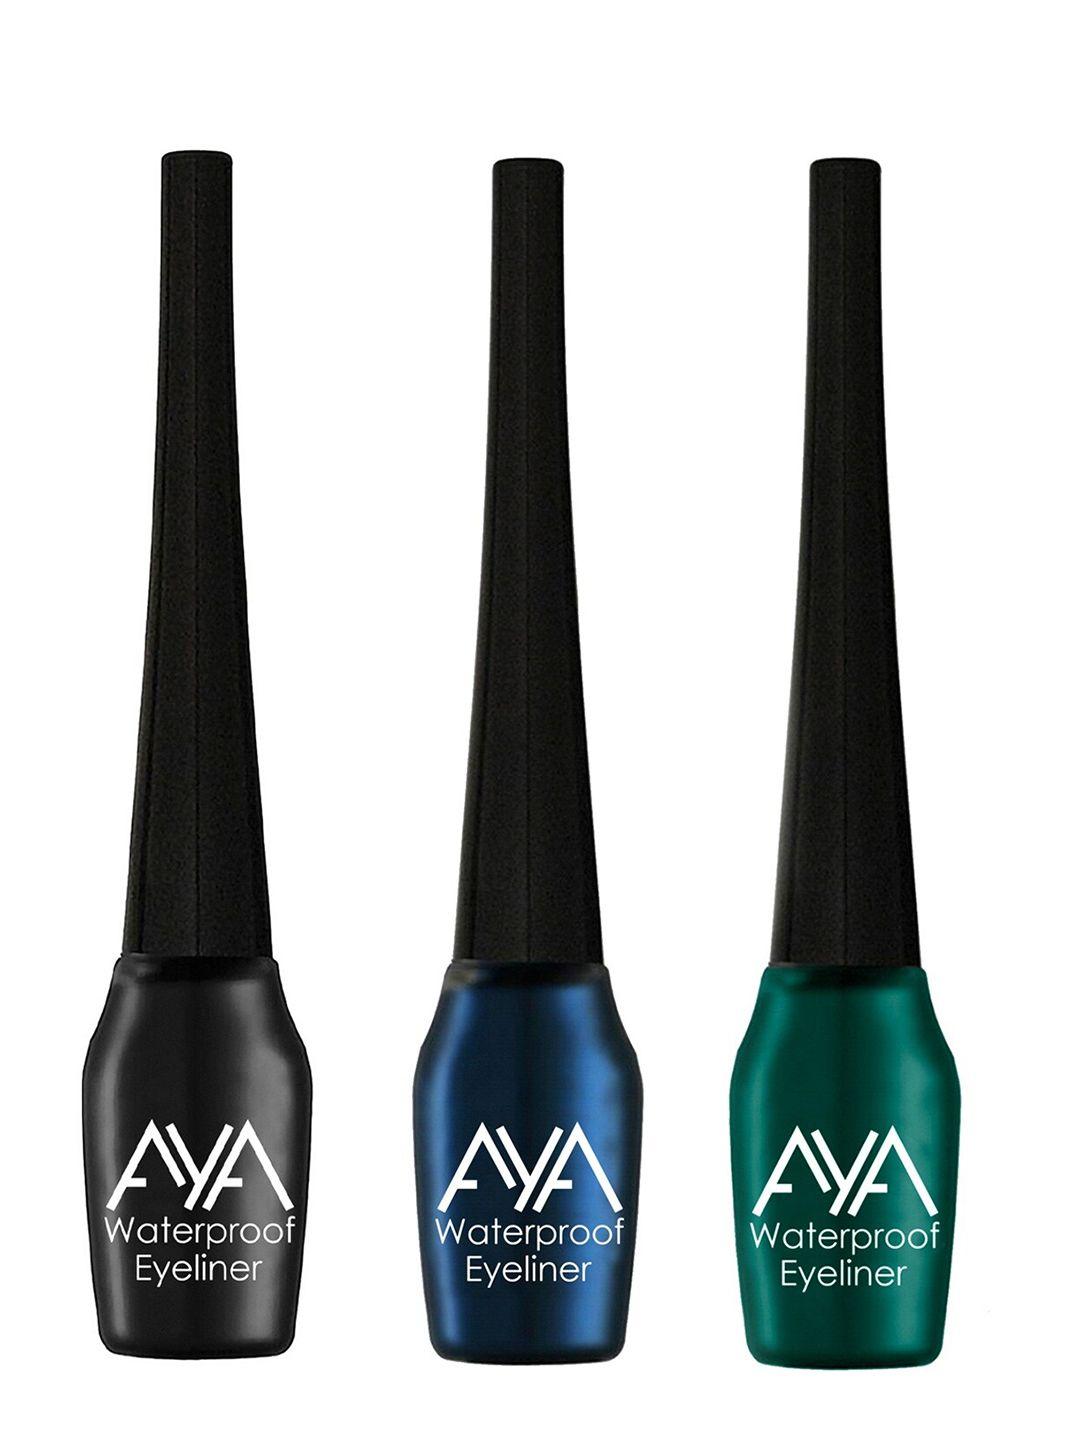 aya set of 3 waterproof liquid eyeliner - black, blue, green